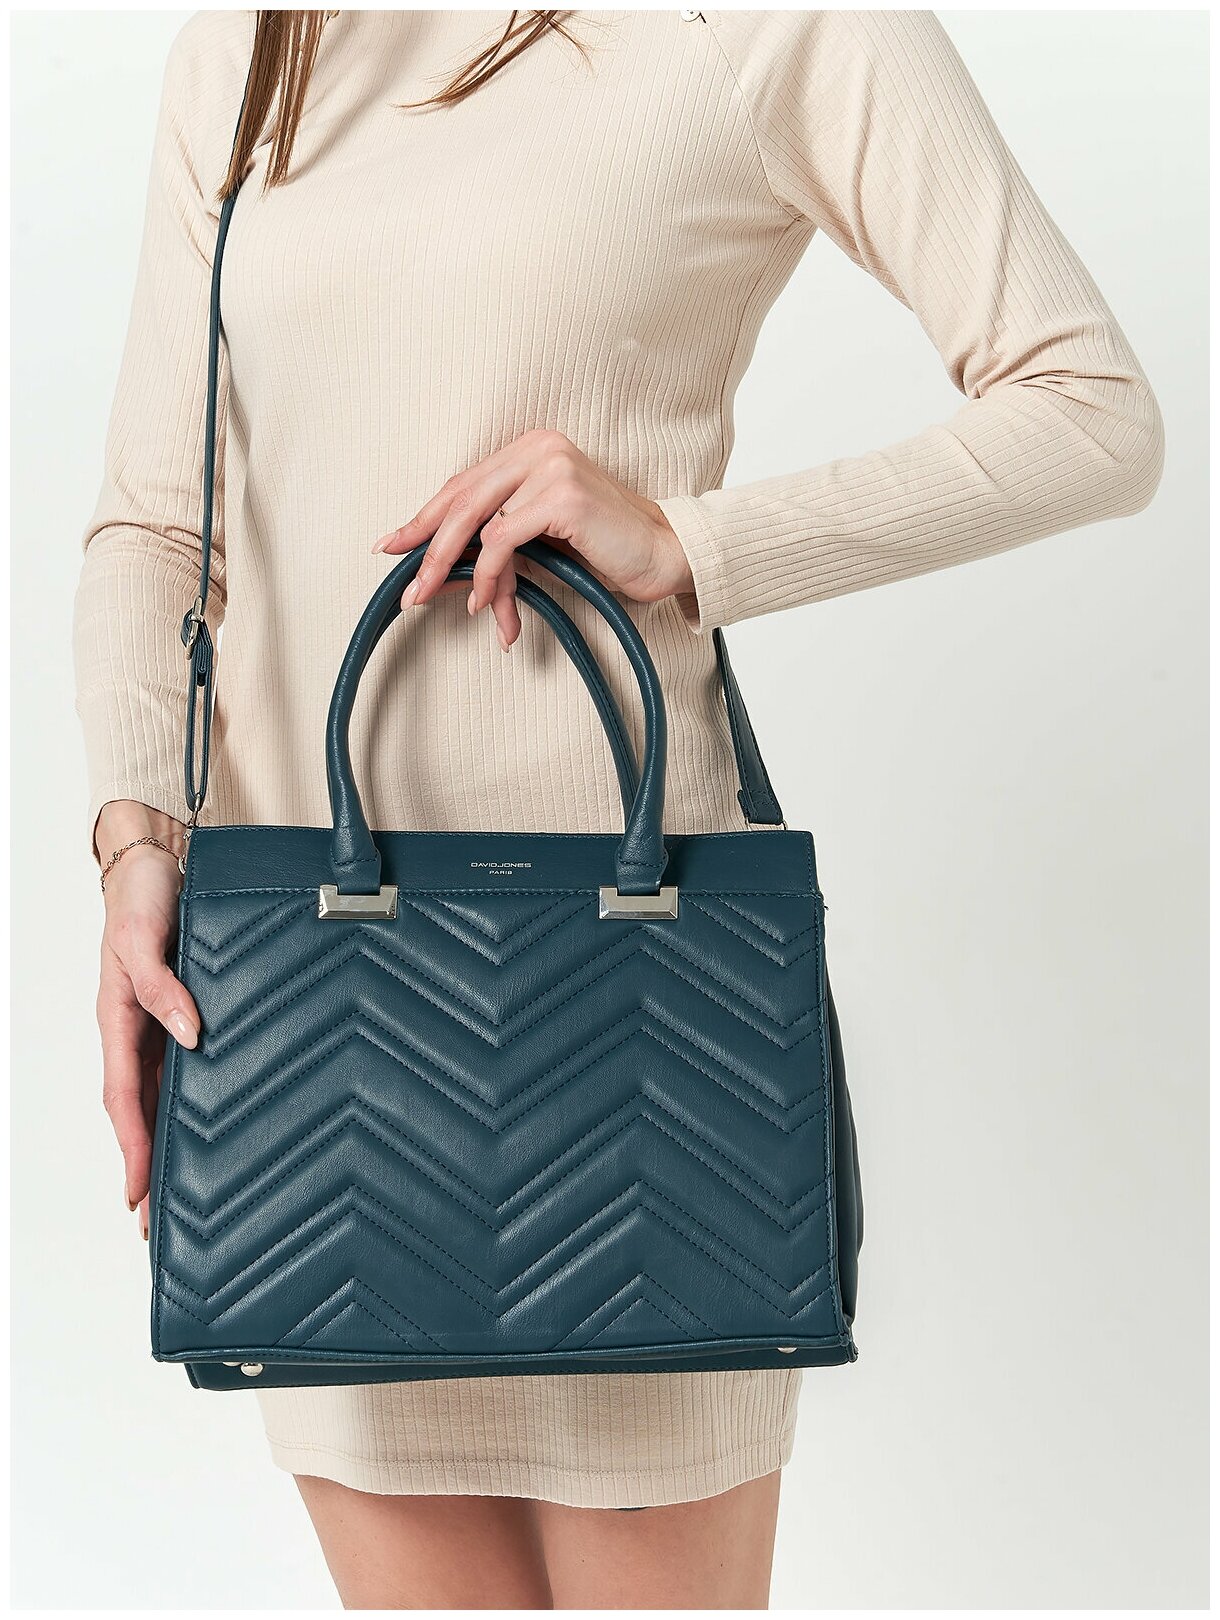 Стильная, влагозащитная, надежная и практичная женская сумка из экокожи David Jones 6615-2K/PEACOCK-BLUE